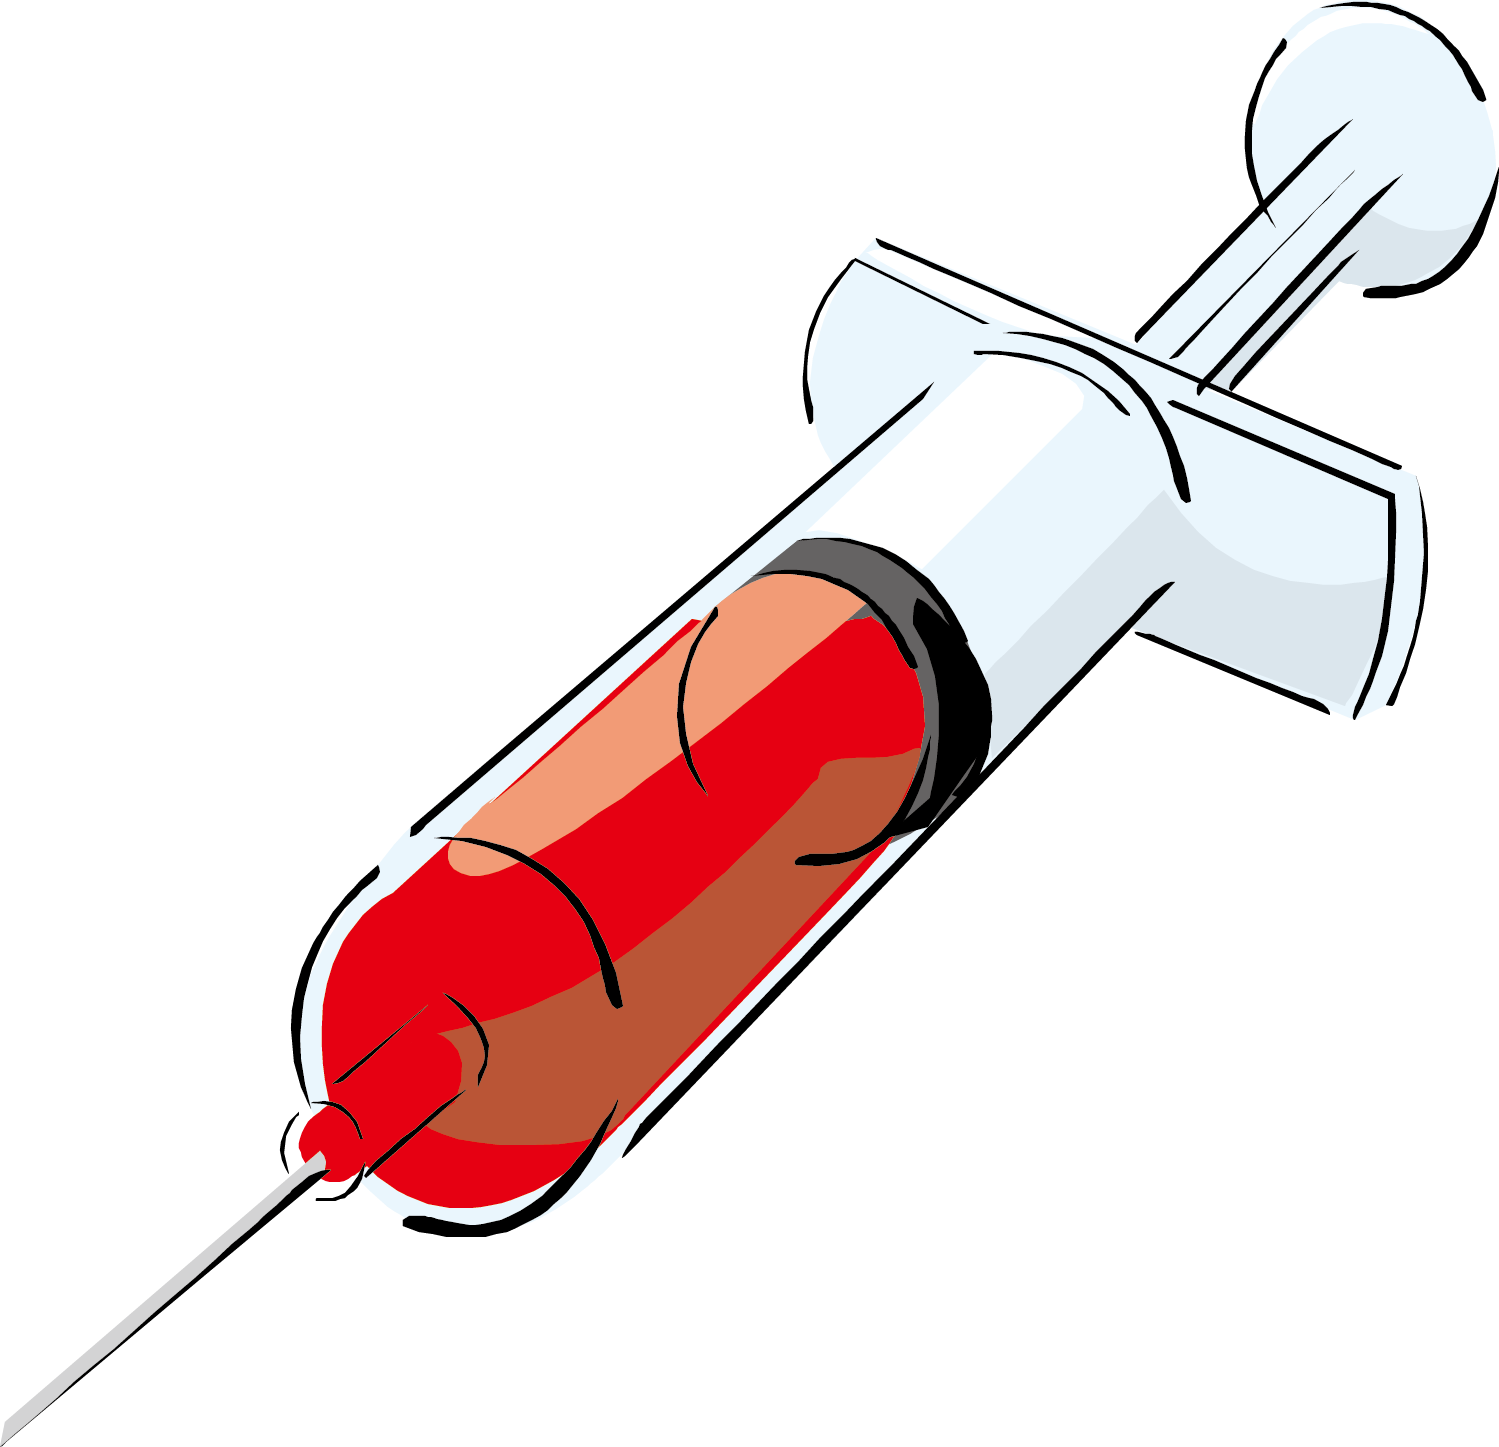 Medicine clipart needle syringe, Medicine needle syringe Transparent ...